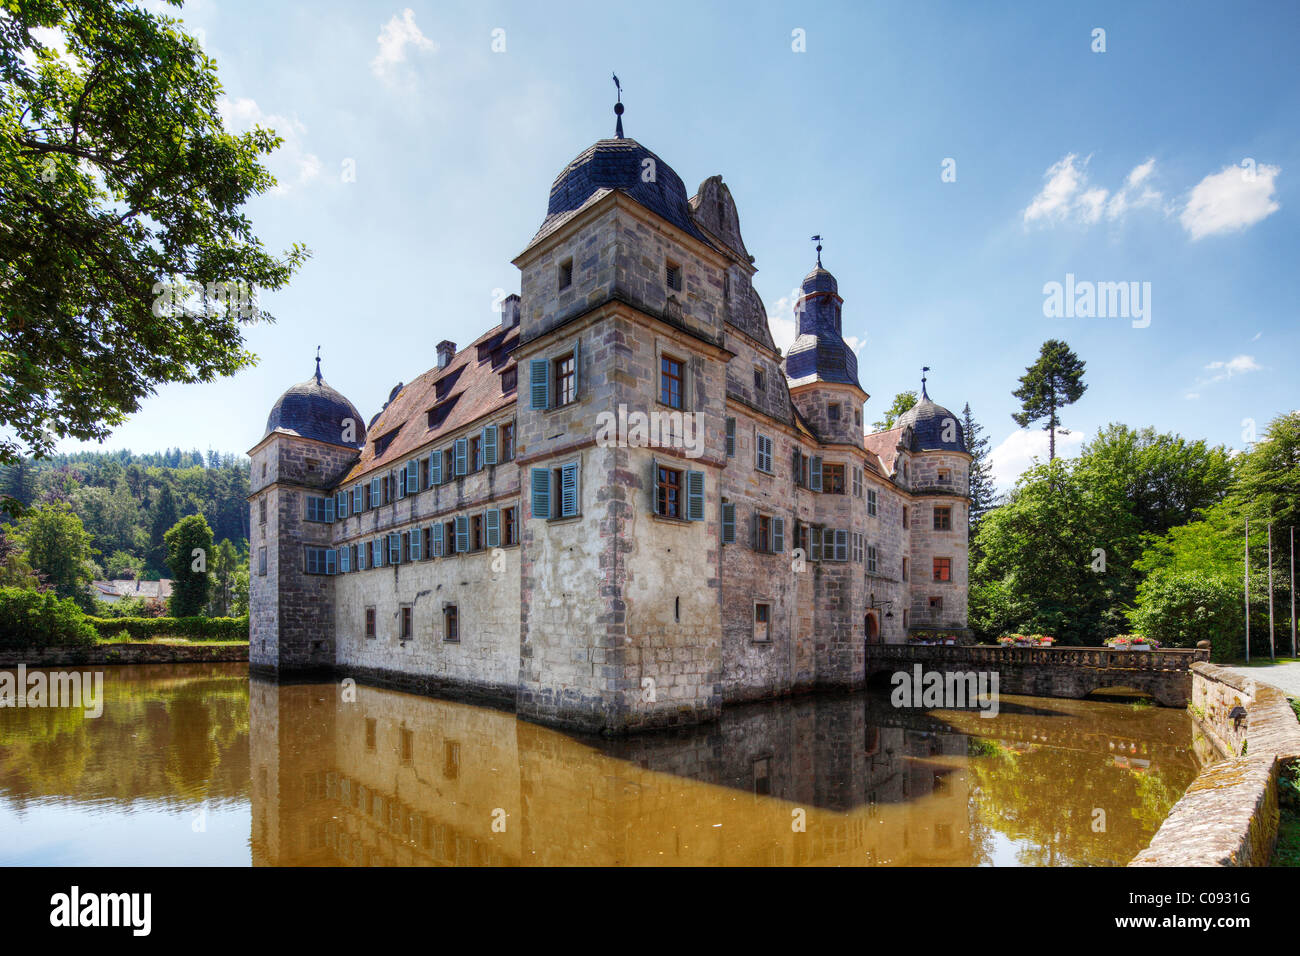 Moated Castle of Mitwitz, Upper Franconia, Franconia, Bavaria, Germany, Europe Stock Photo